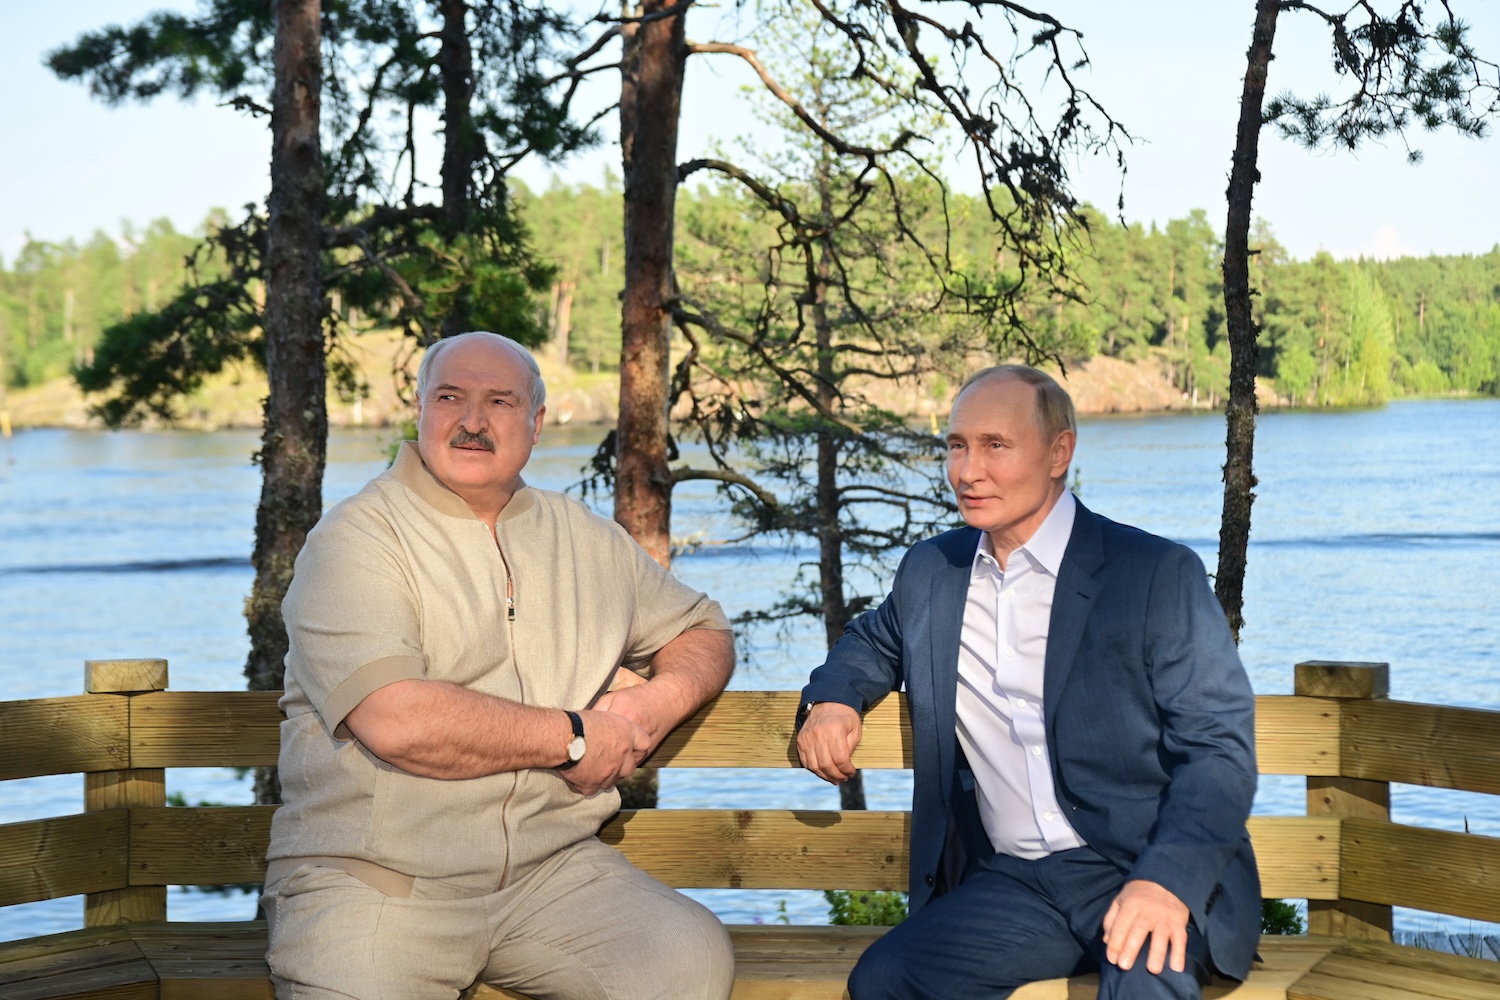 Фотошоп не помог Лукашенко скрыть страдания и избавиться от лишнего веса - фотофакт